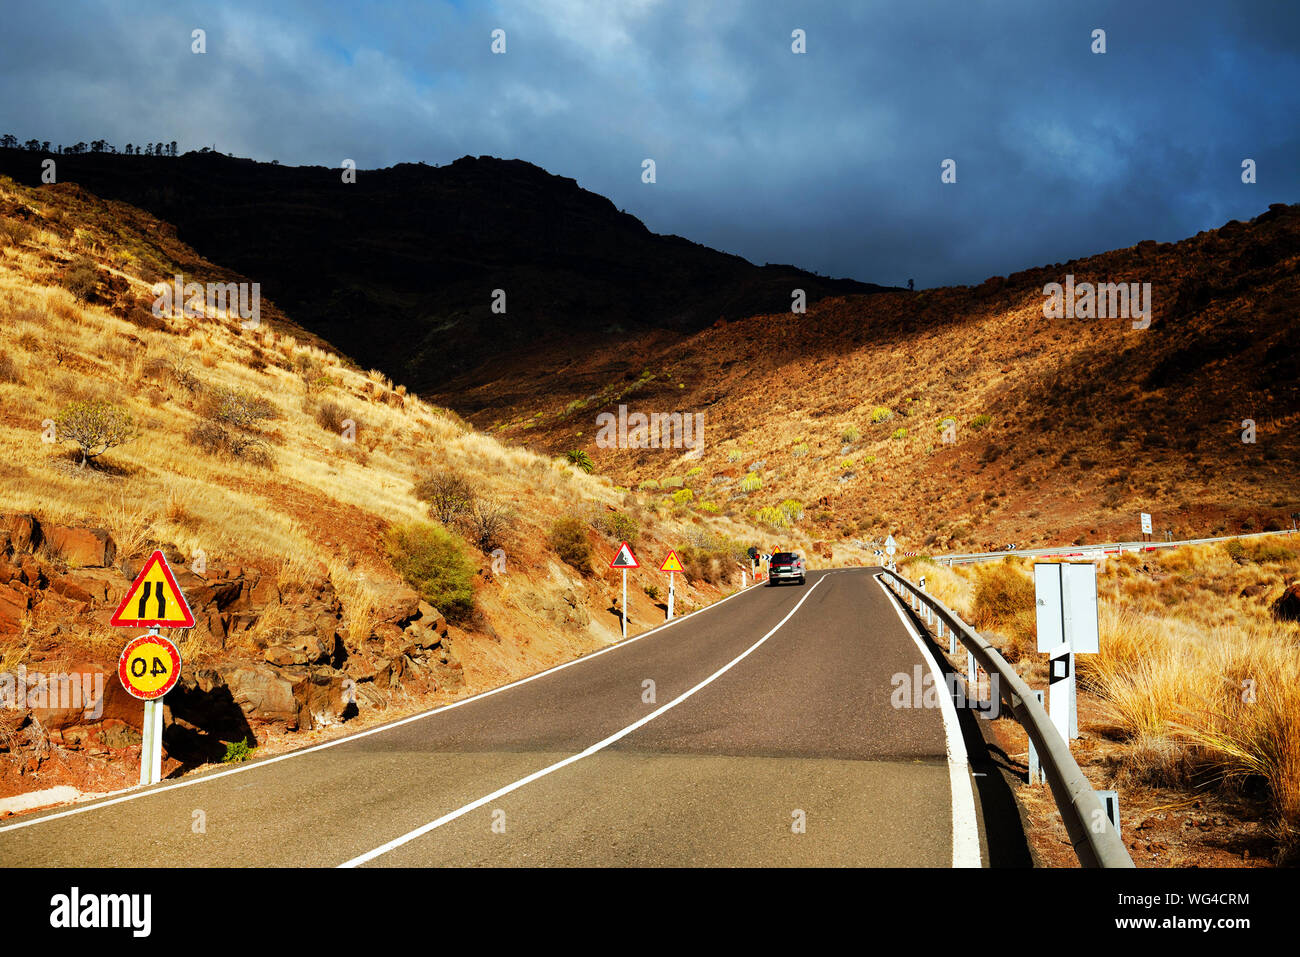 Perspectiva decreciente de carretera pasando a través de las montañas contra el cielo nublado Foto de stock